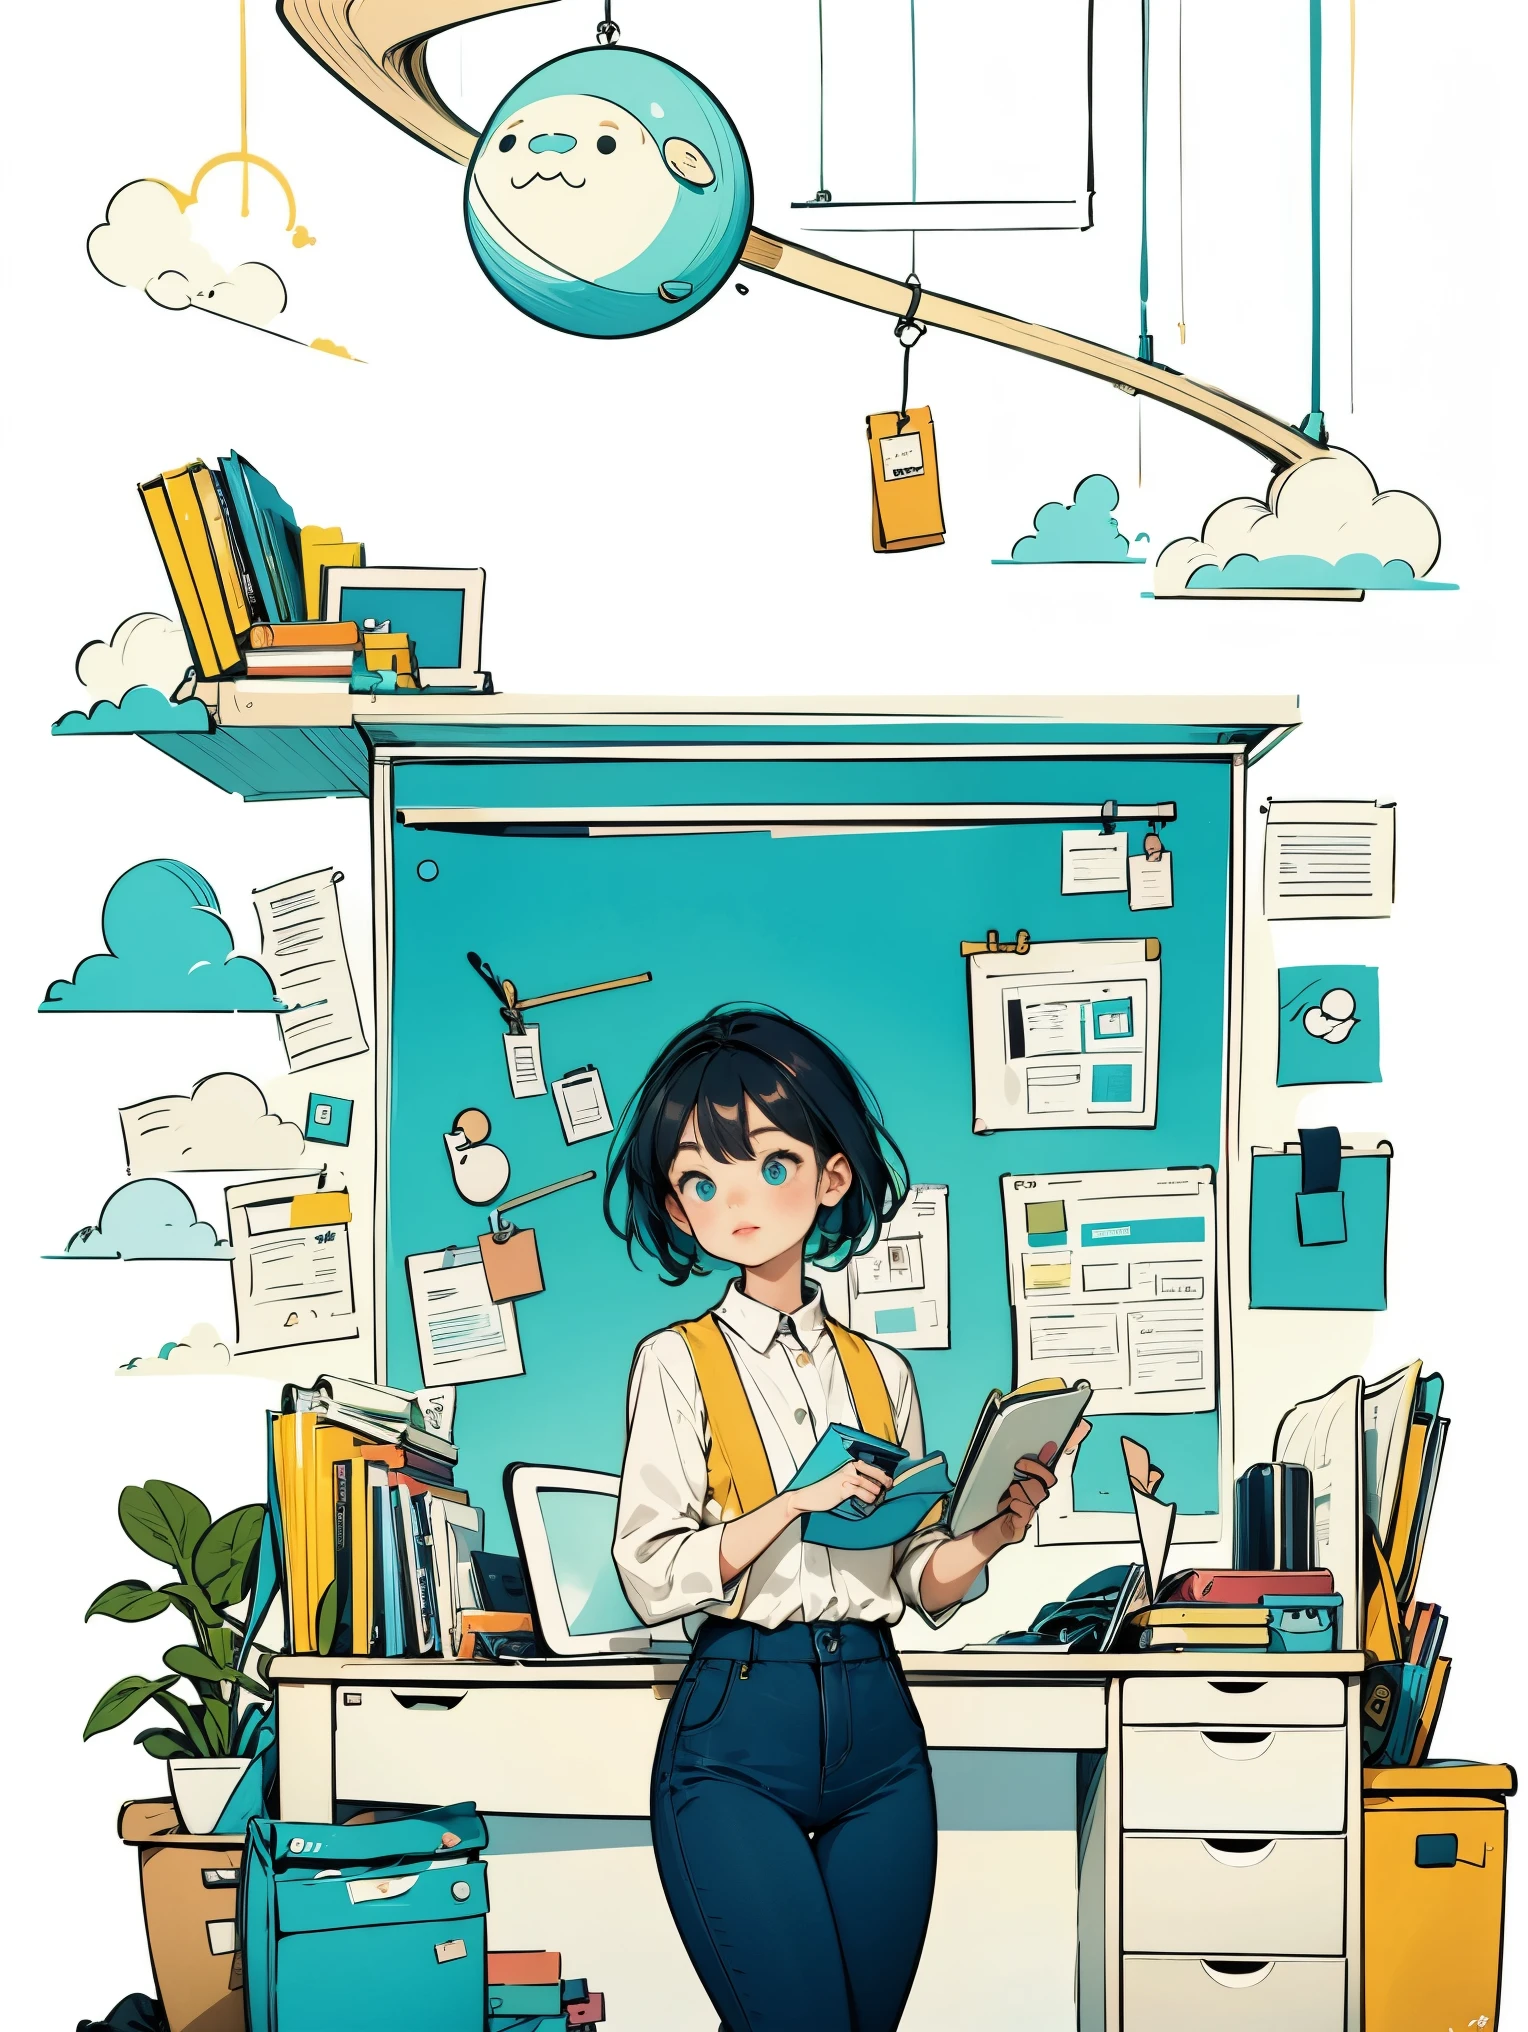 1 niña con camisa blanca y chaleco azul.,pantalones,De pie,trabajando en la oficina,pelo largo,sonrisa,fondo sencillo